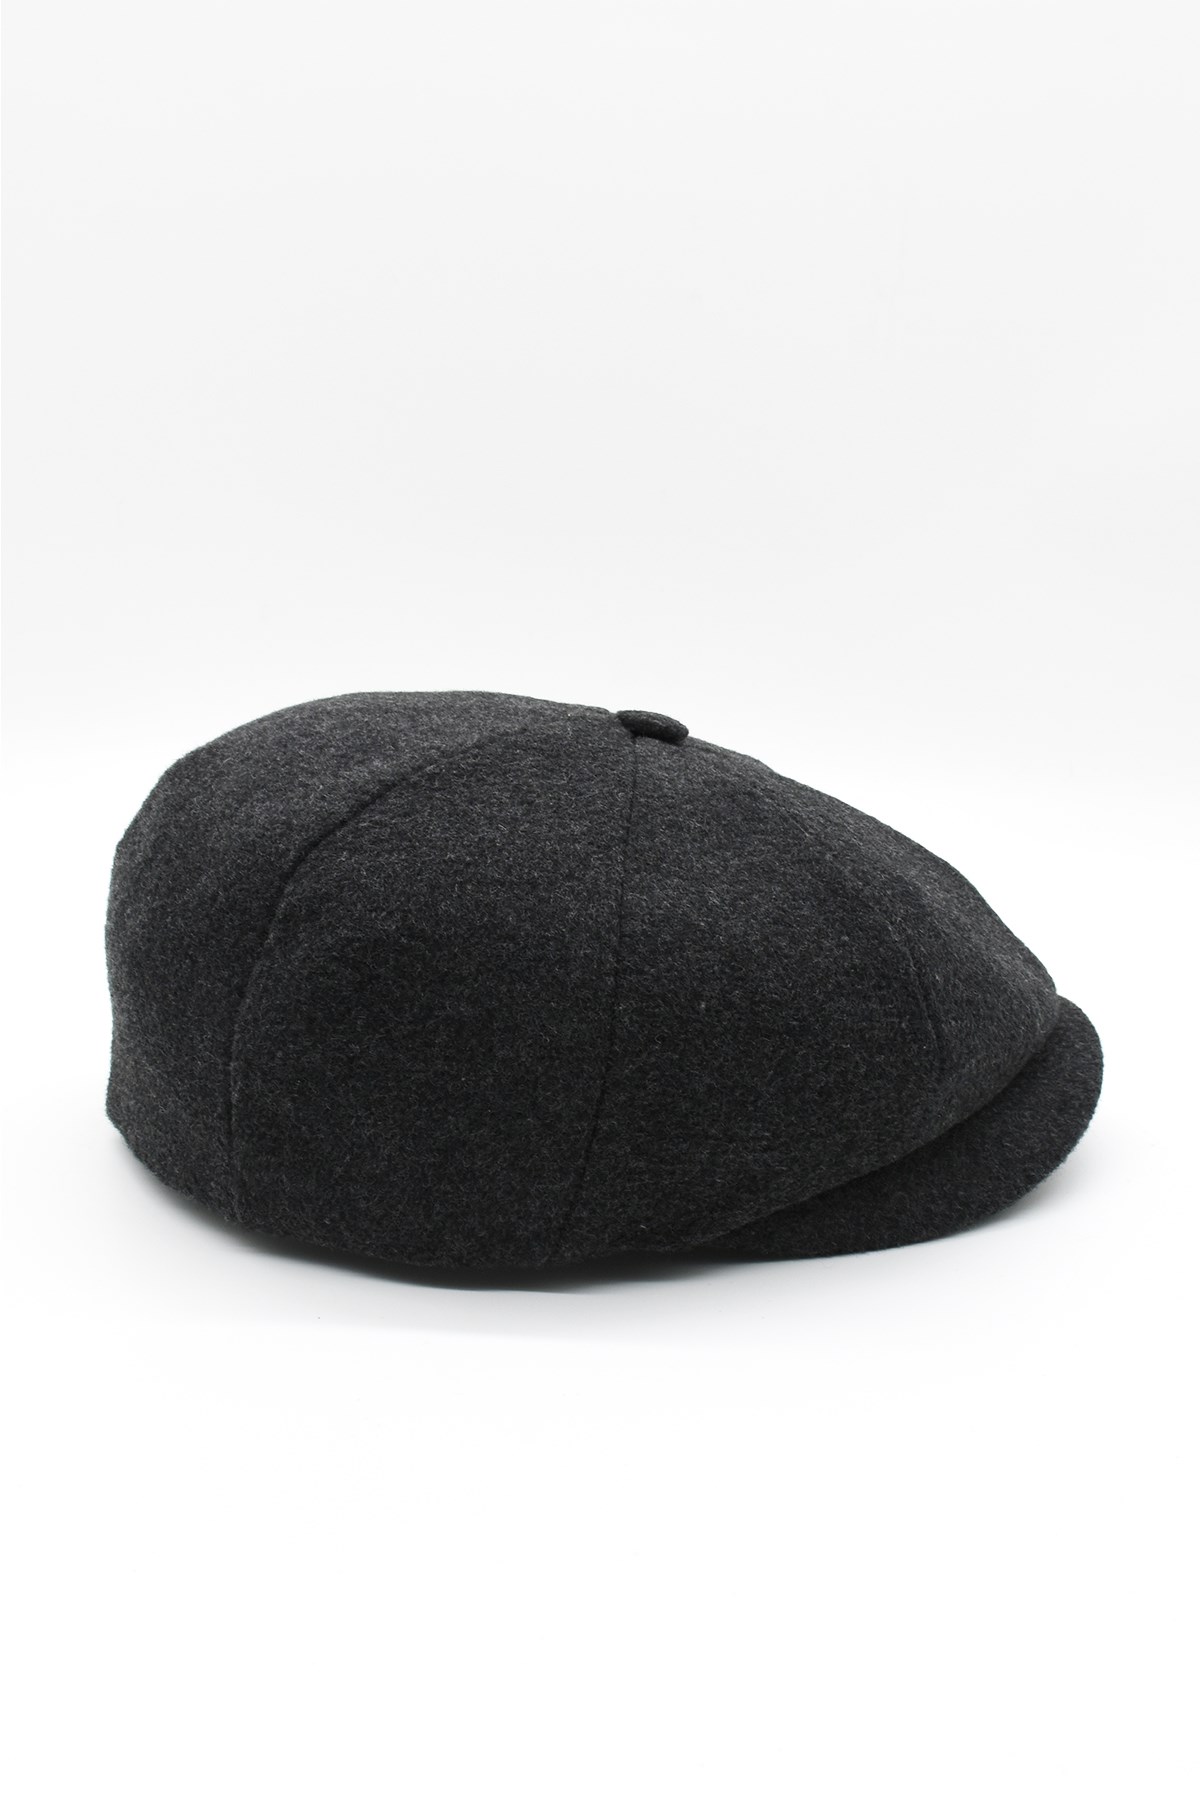 Külah Erkek İngiliz Stili Yün Şapka Füme Kasket KLH0316